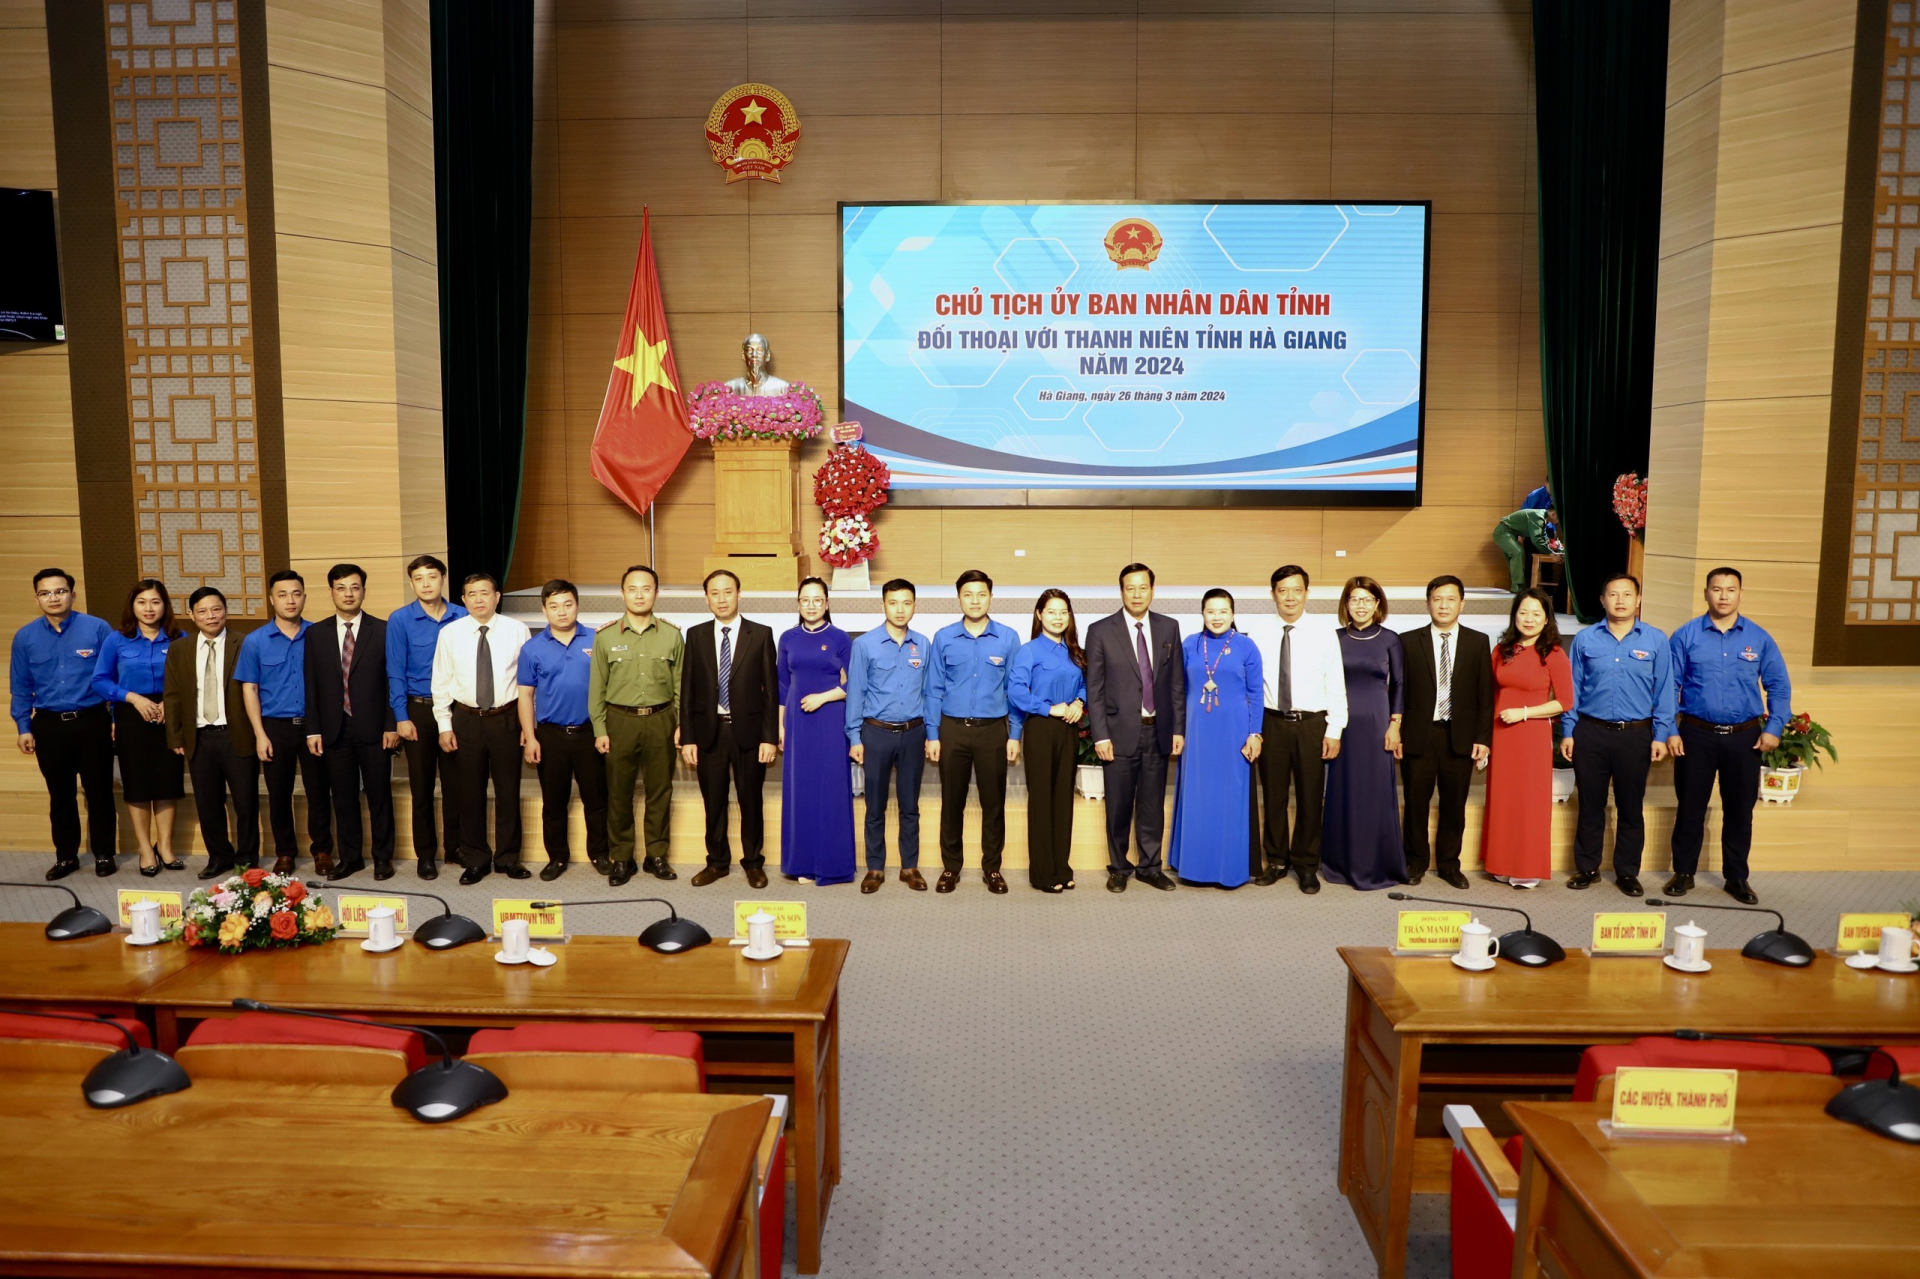 Chủ tịch UBND tỉnh Nguyễn Văn Sơn cùng lãnh đạo các sở, ban, ngành của tỉnh chụp ảnh lưu niệm với đoàn viên, thanh niên tại buổi đối thoại 